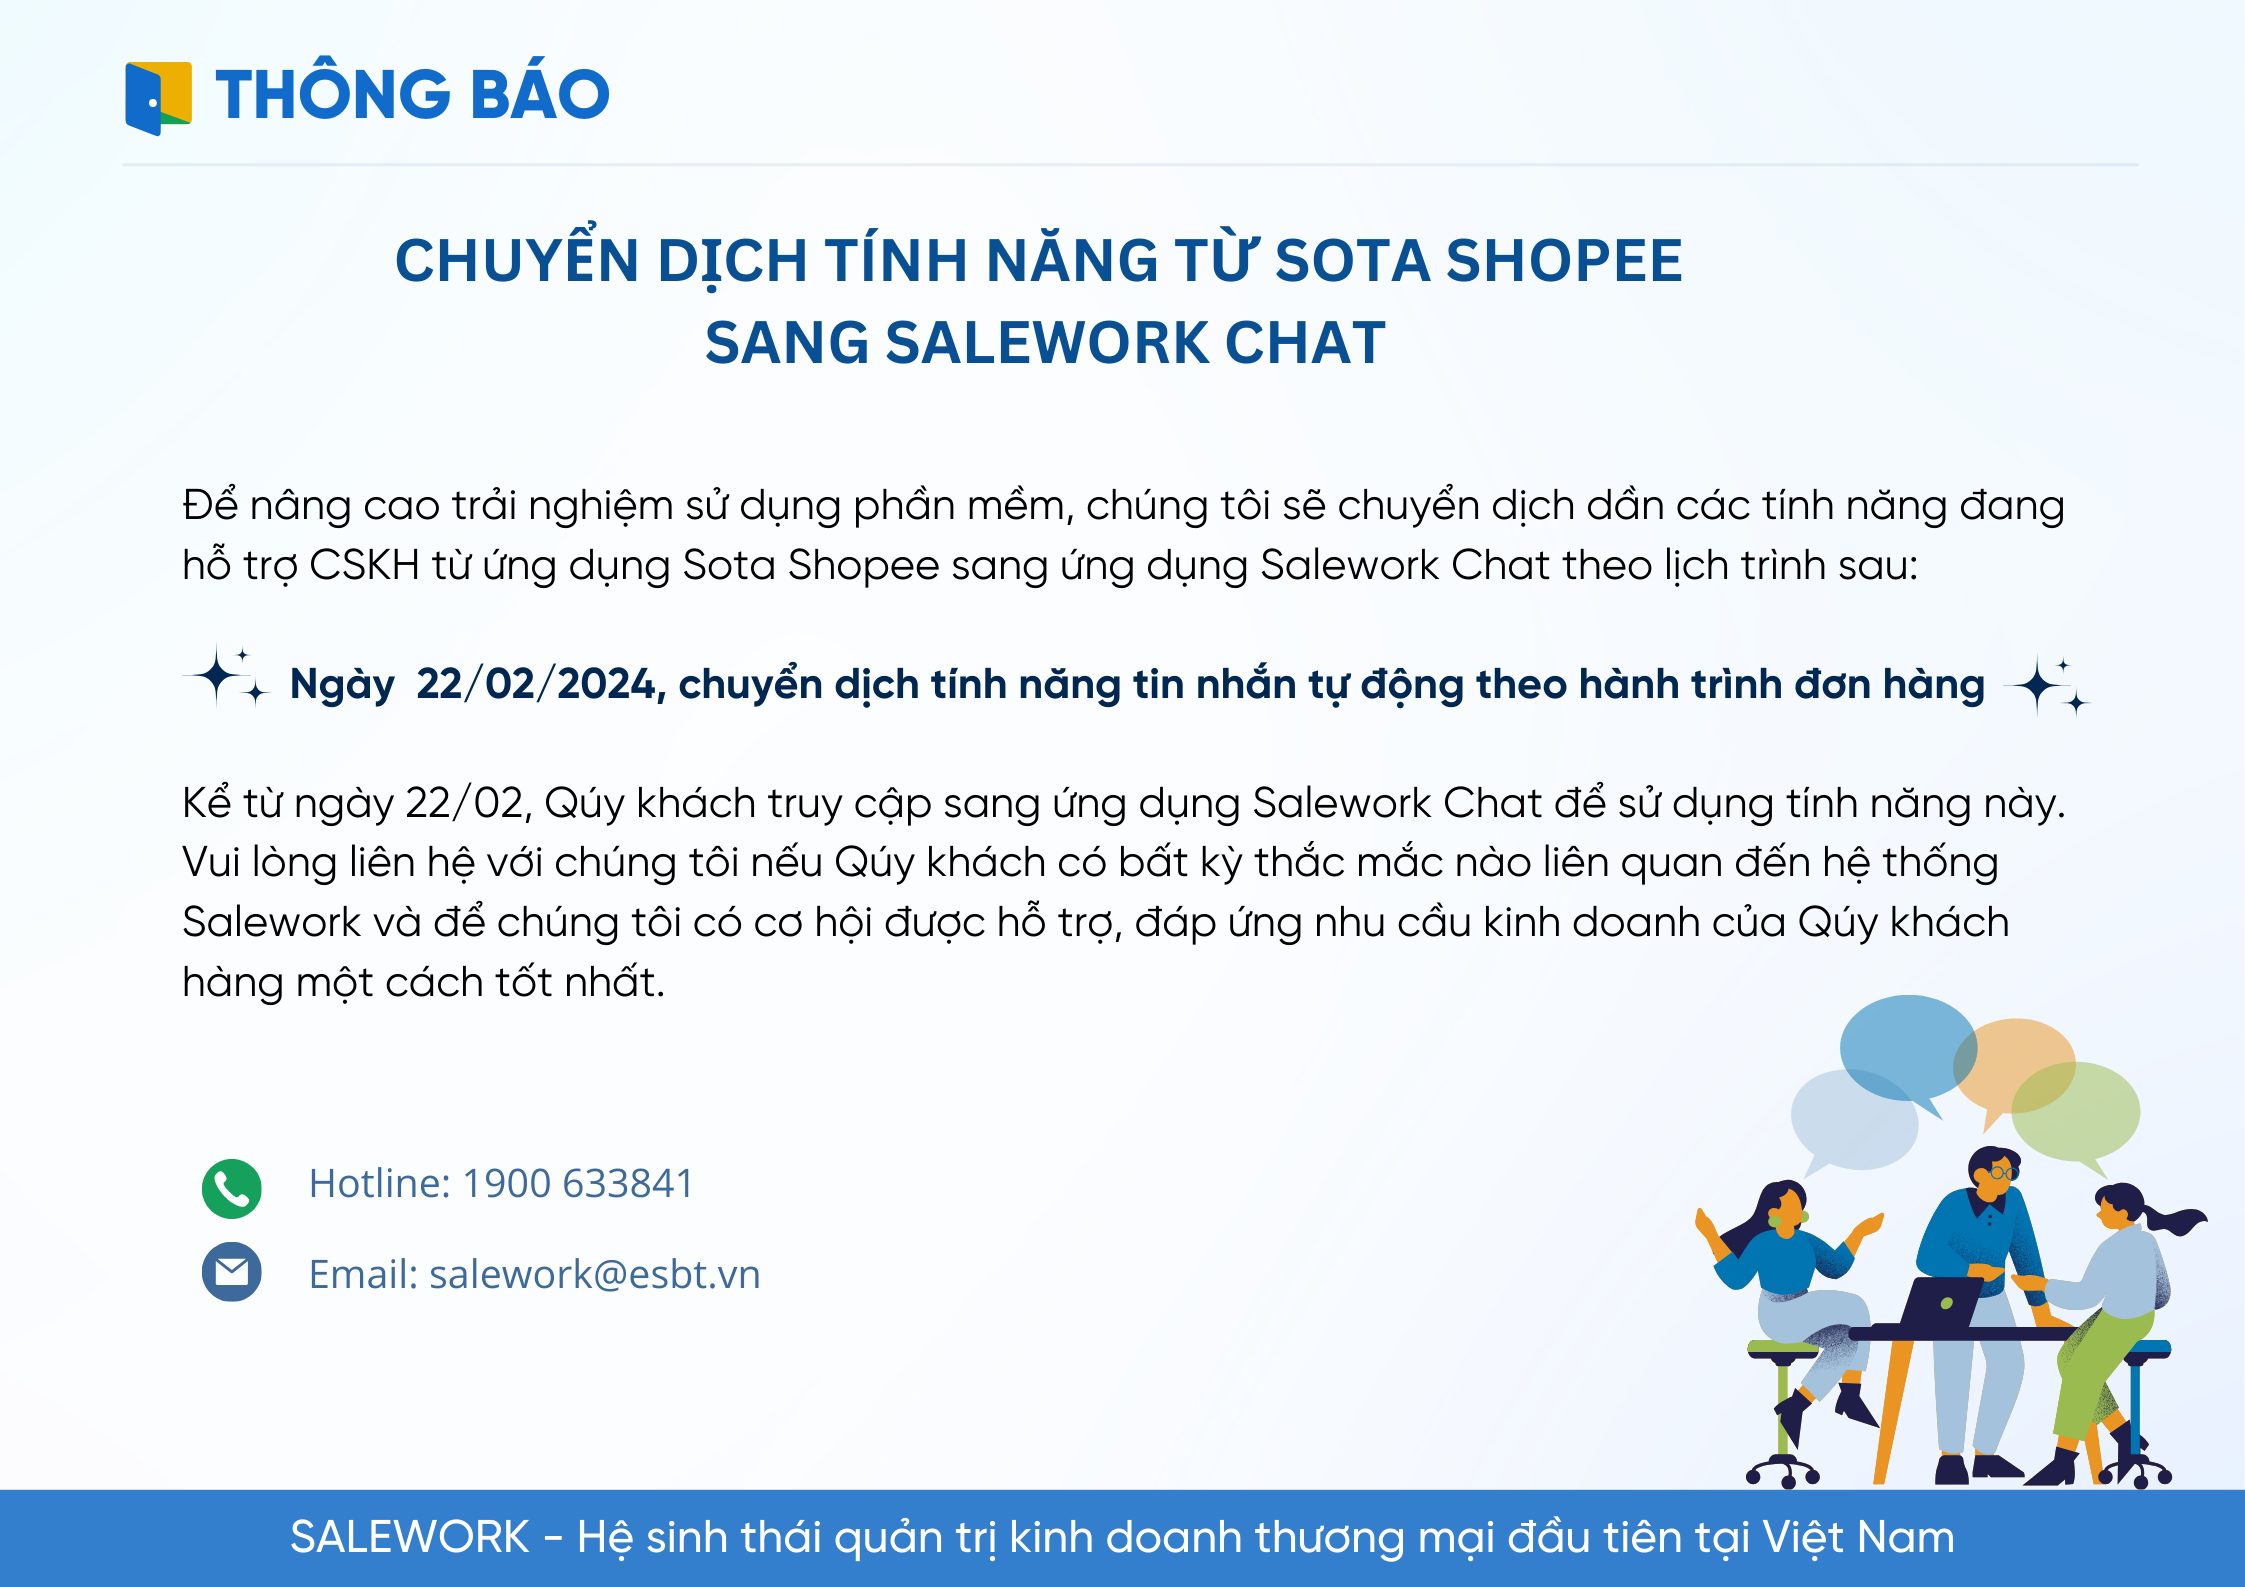 Chuyển dịch tính năng tin nhắn tự động cho sàn Shopee sang ứng dụng Salework Chat - 8